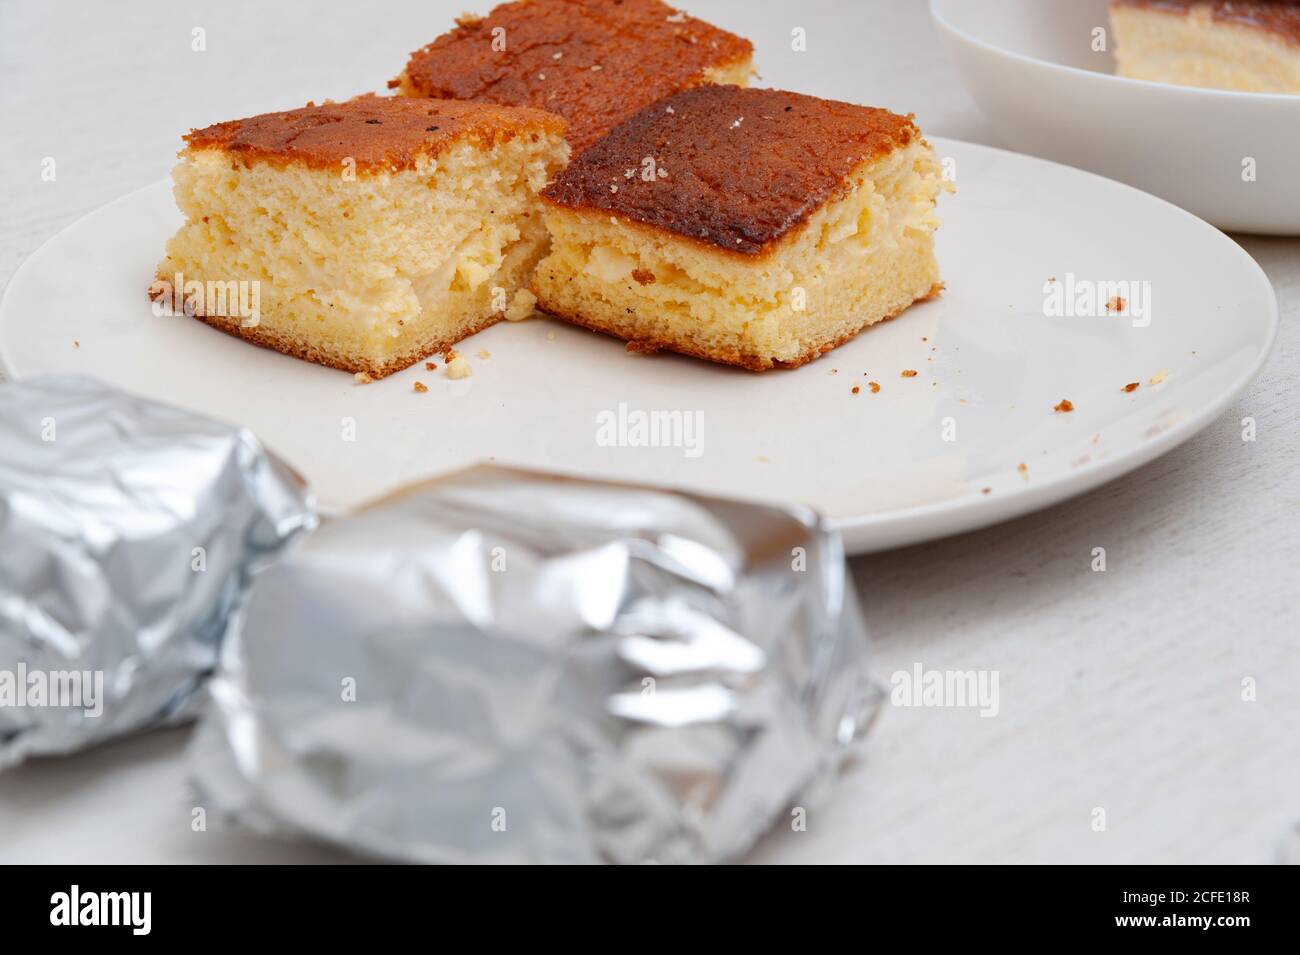 Traditionelle brasilianische Dessert (bekannt als Bolo Gelado) -  Herstellung Schritt für Schritt: Kuchen Stücke verpackt und nicht in  Aluminiumfolie eingewickelt. Selektiver Fokus Stockfotografie - Alamy